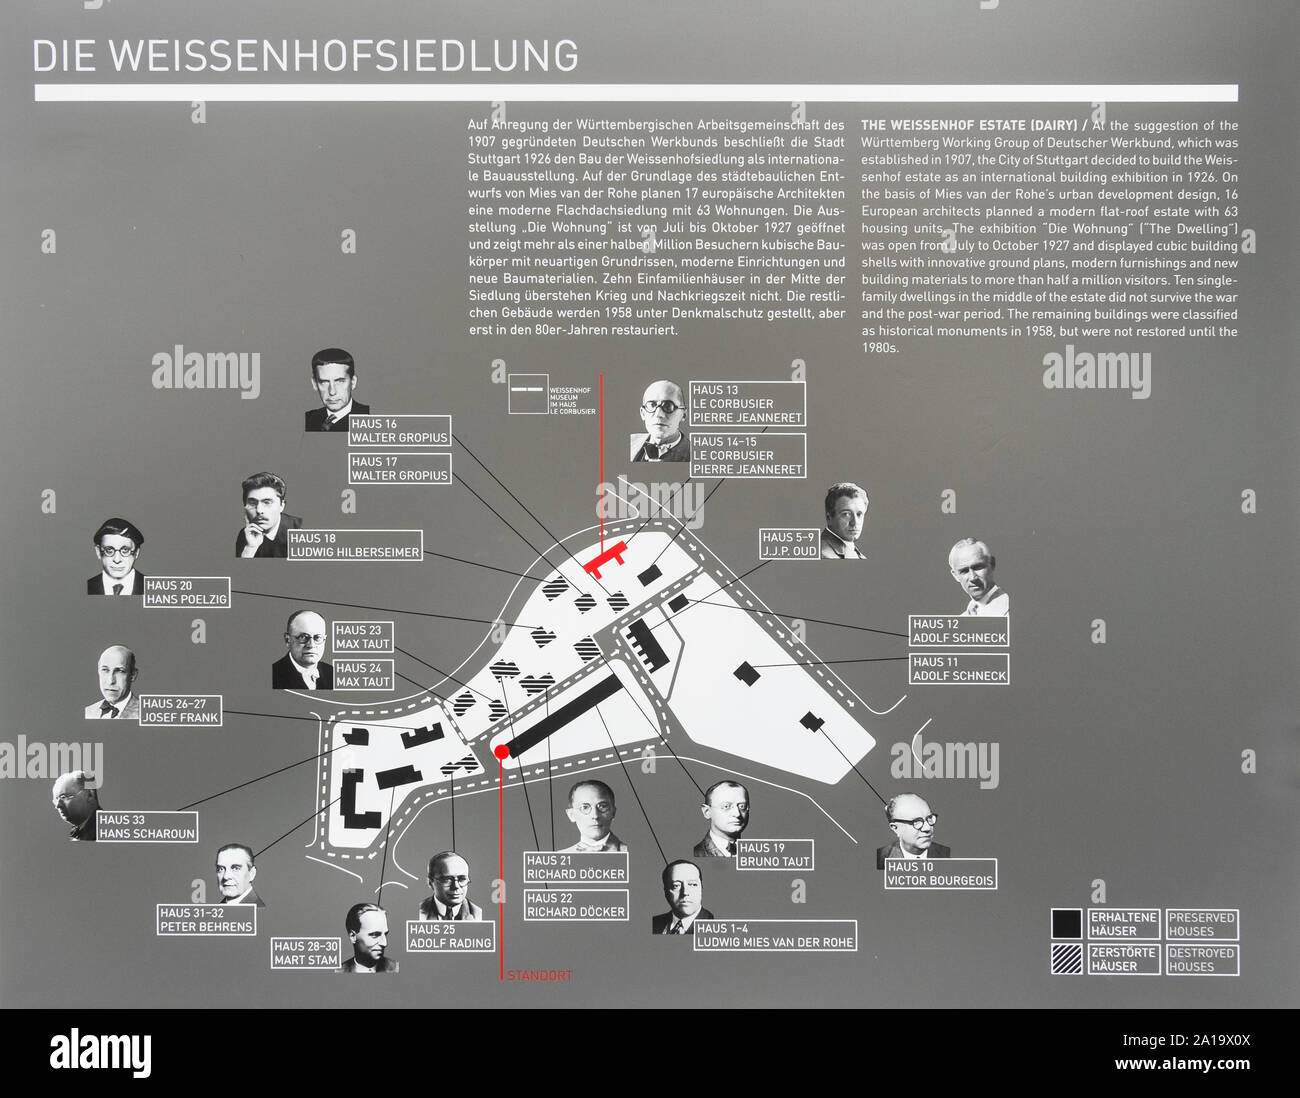 Weissenhofsiedlung, diseño con retratos de arquitectos implicados Foto de stock